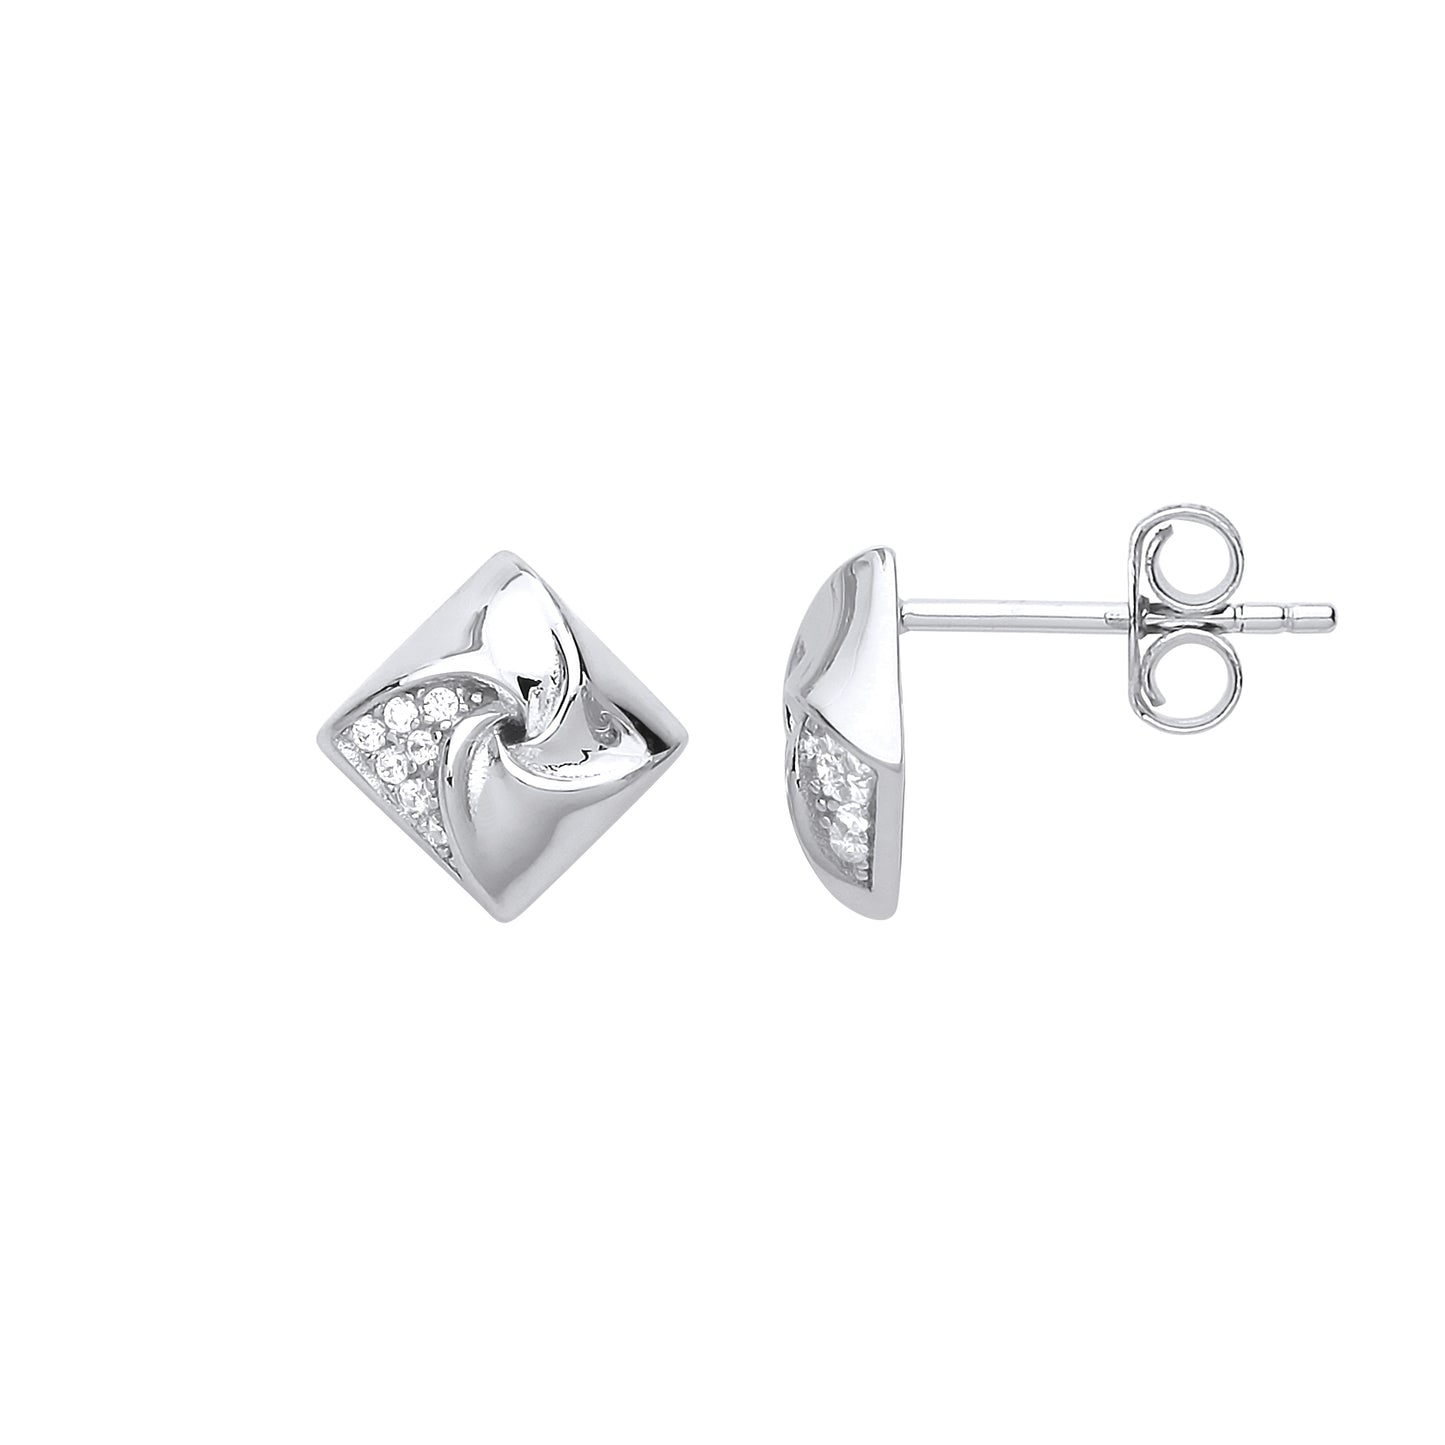 Silver  CZ Swirling Square Stud Earrings - GVE724